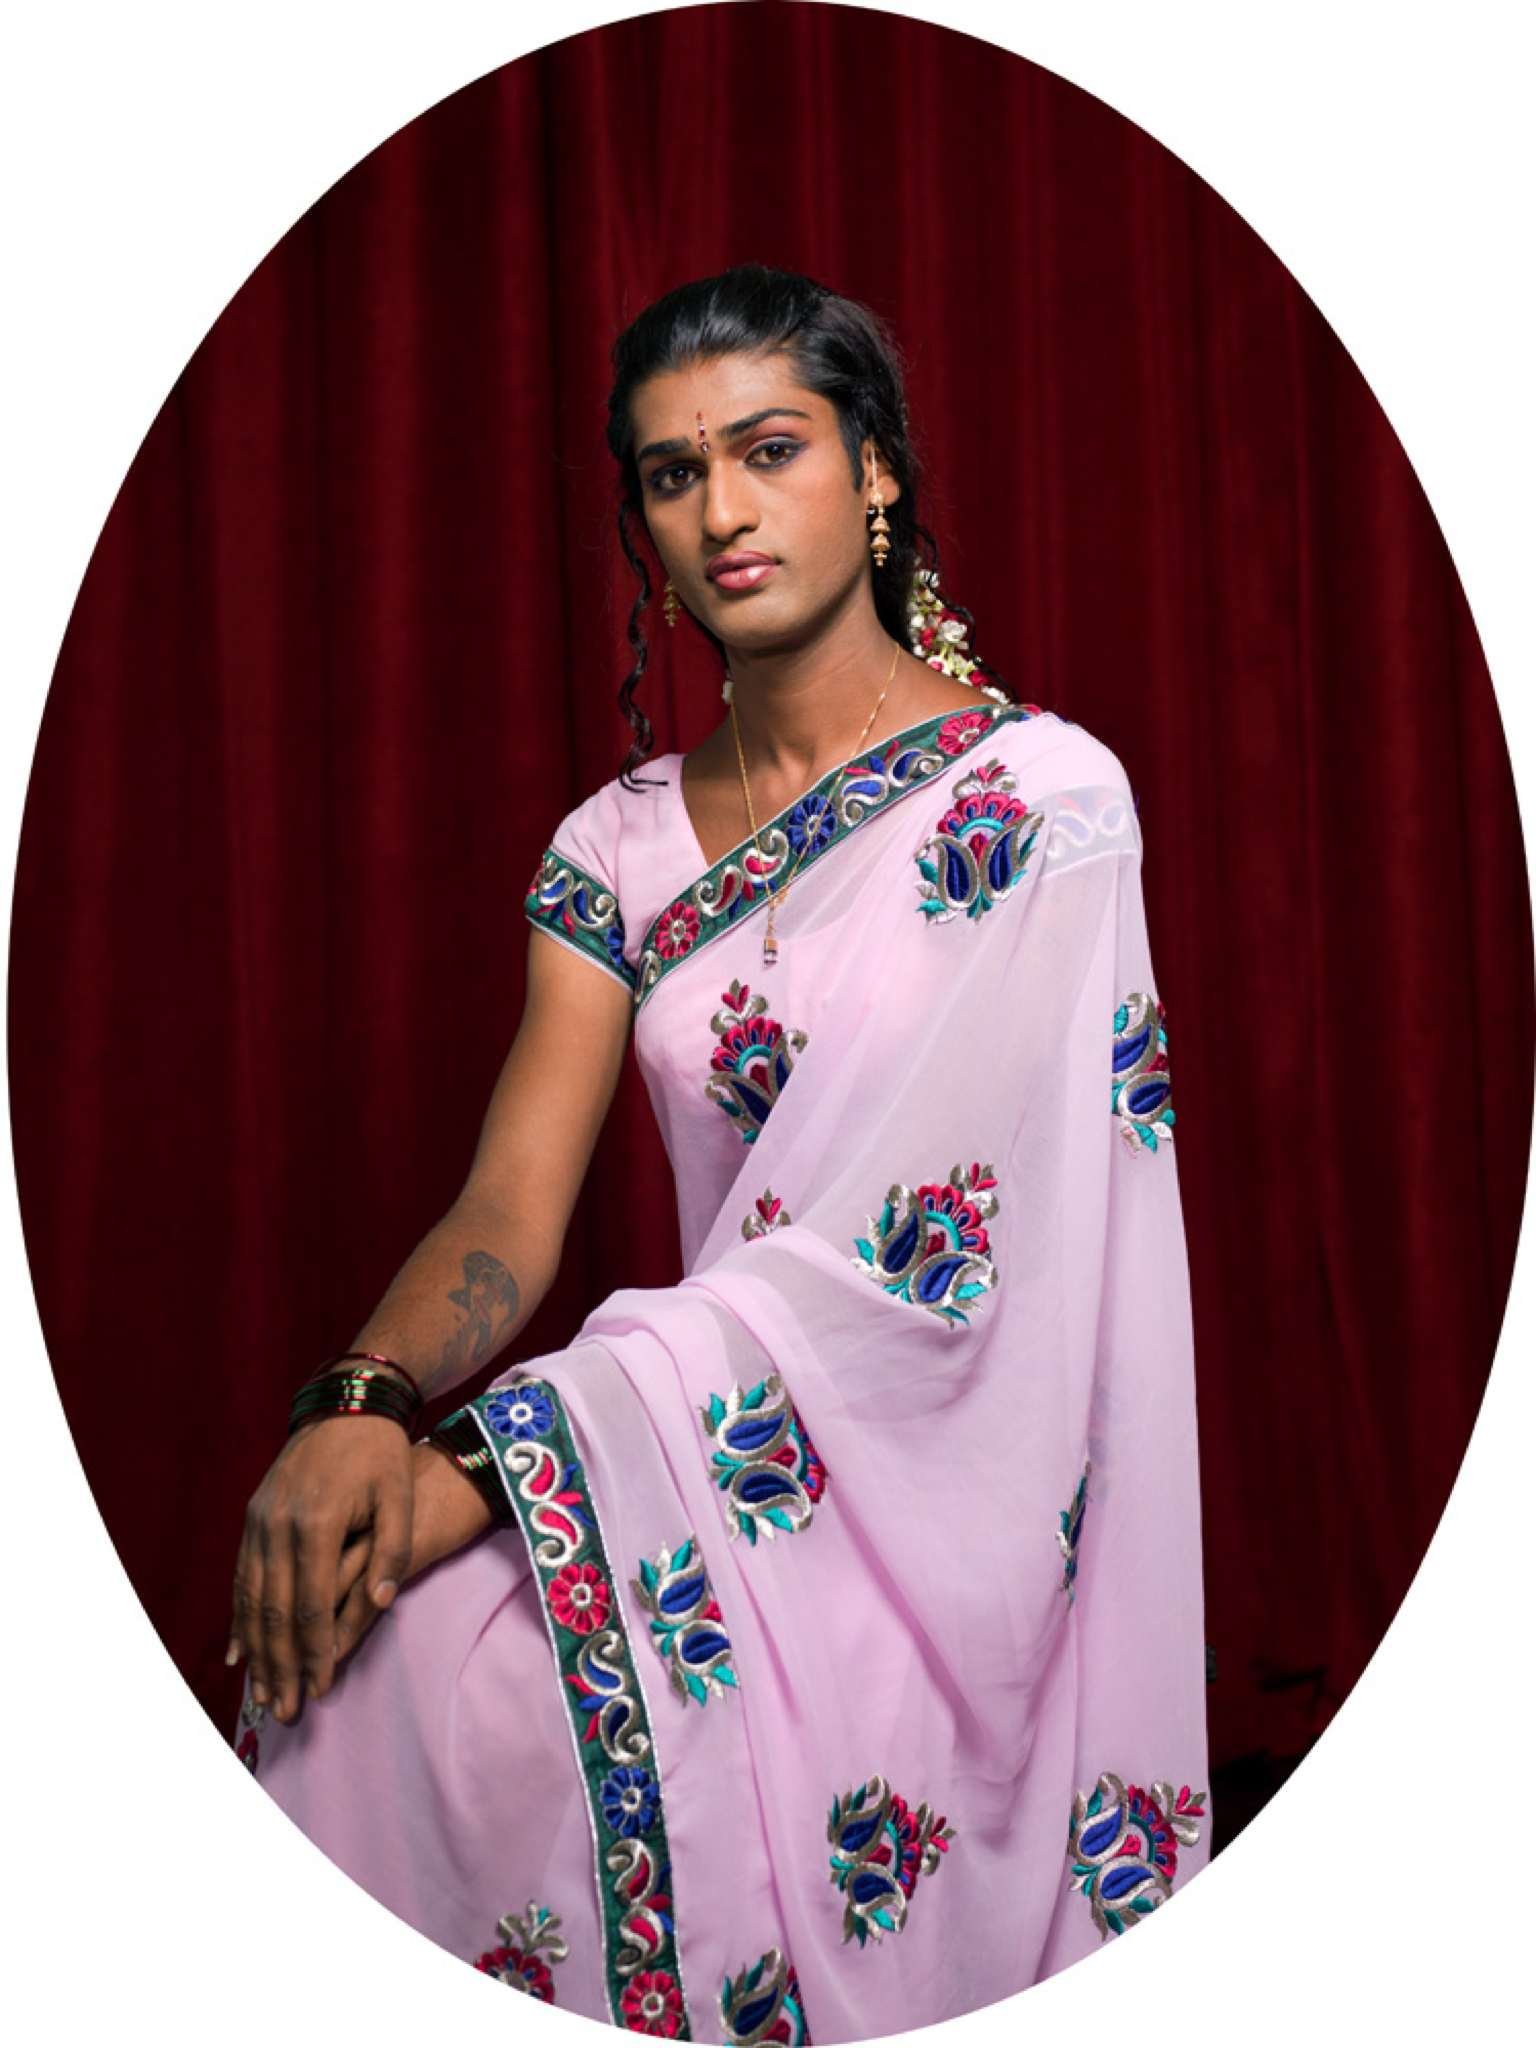 transvestites mumbai india of Young